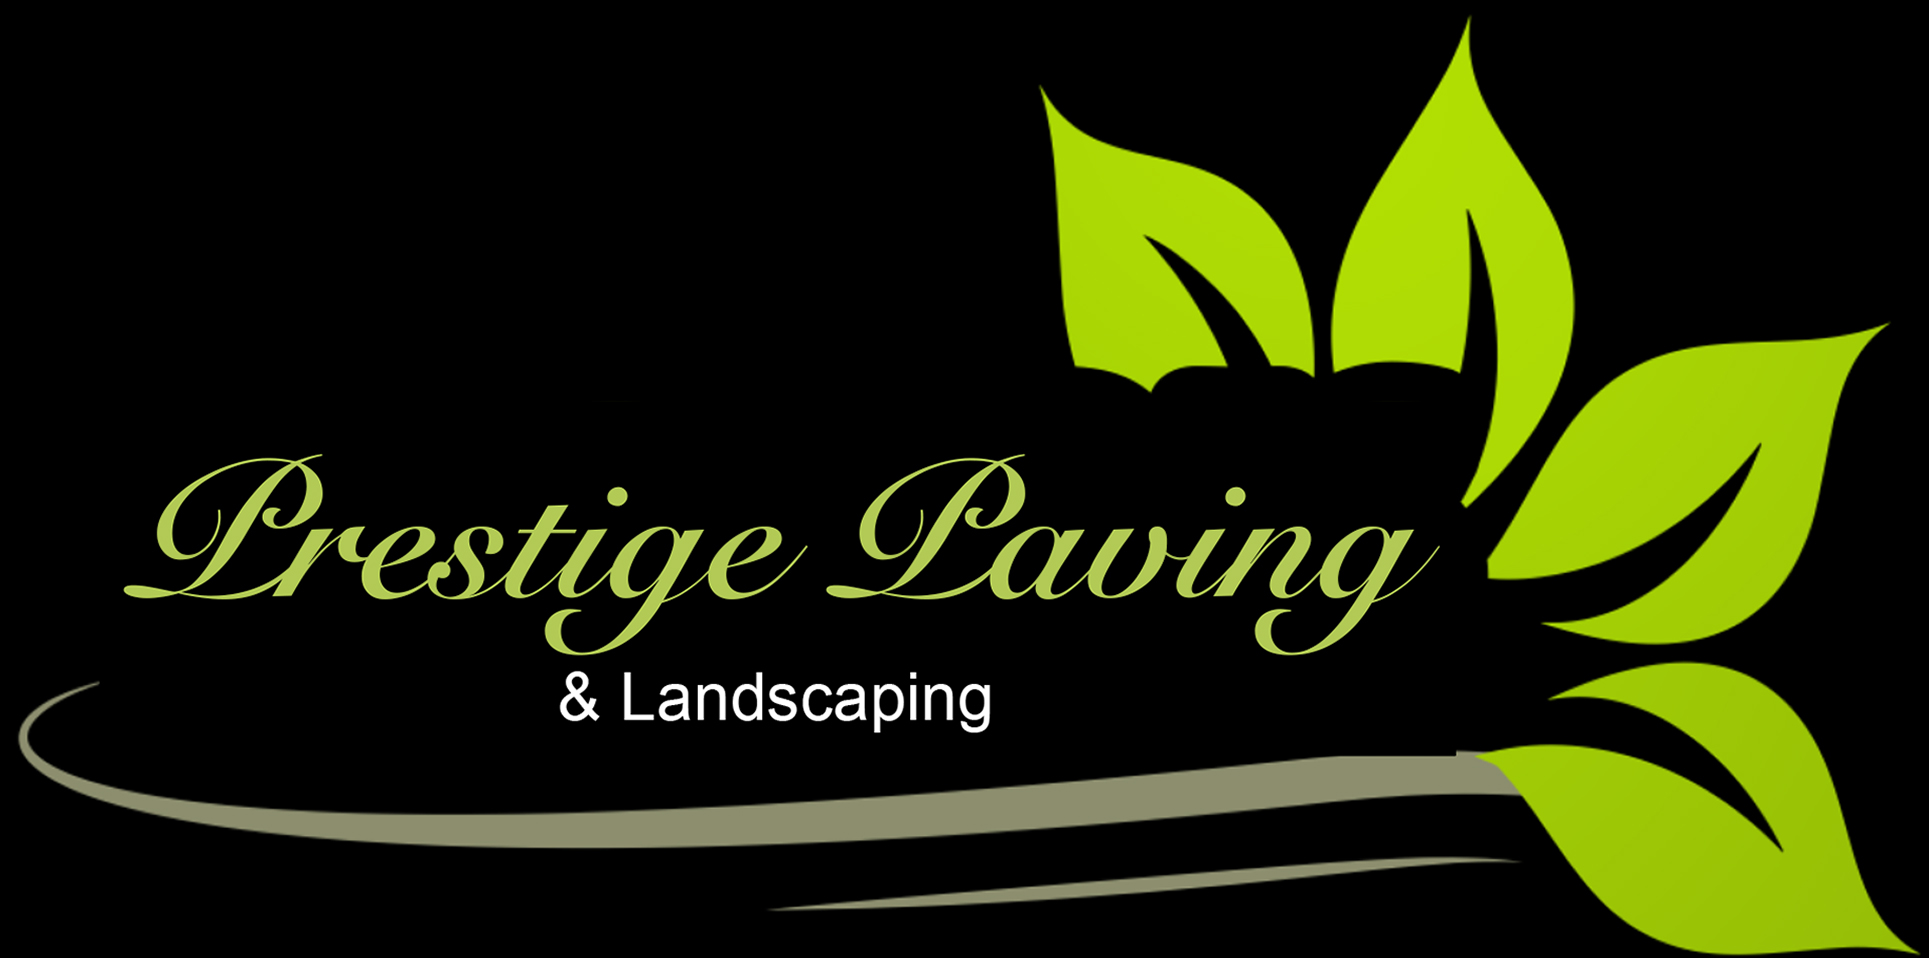 Prestige Paving & Landscaping